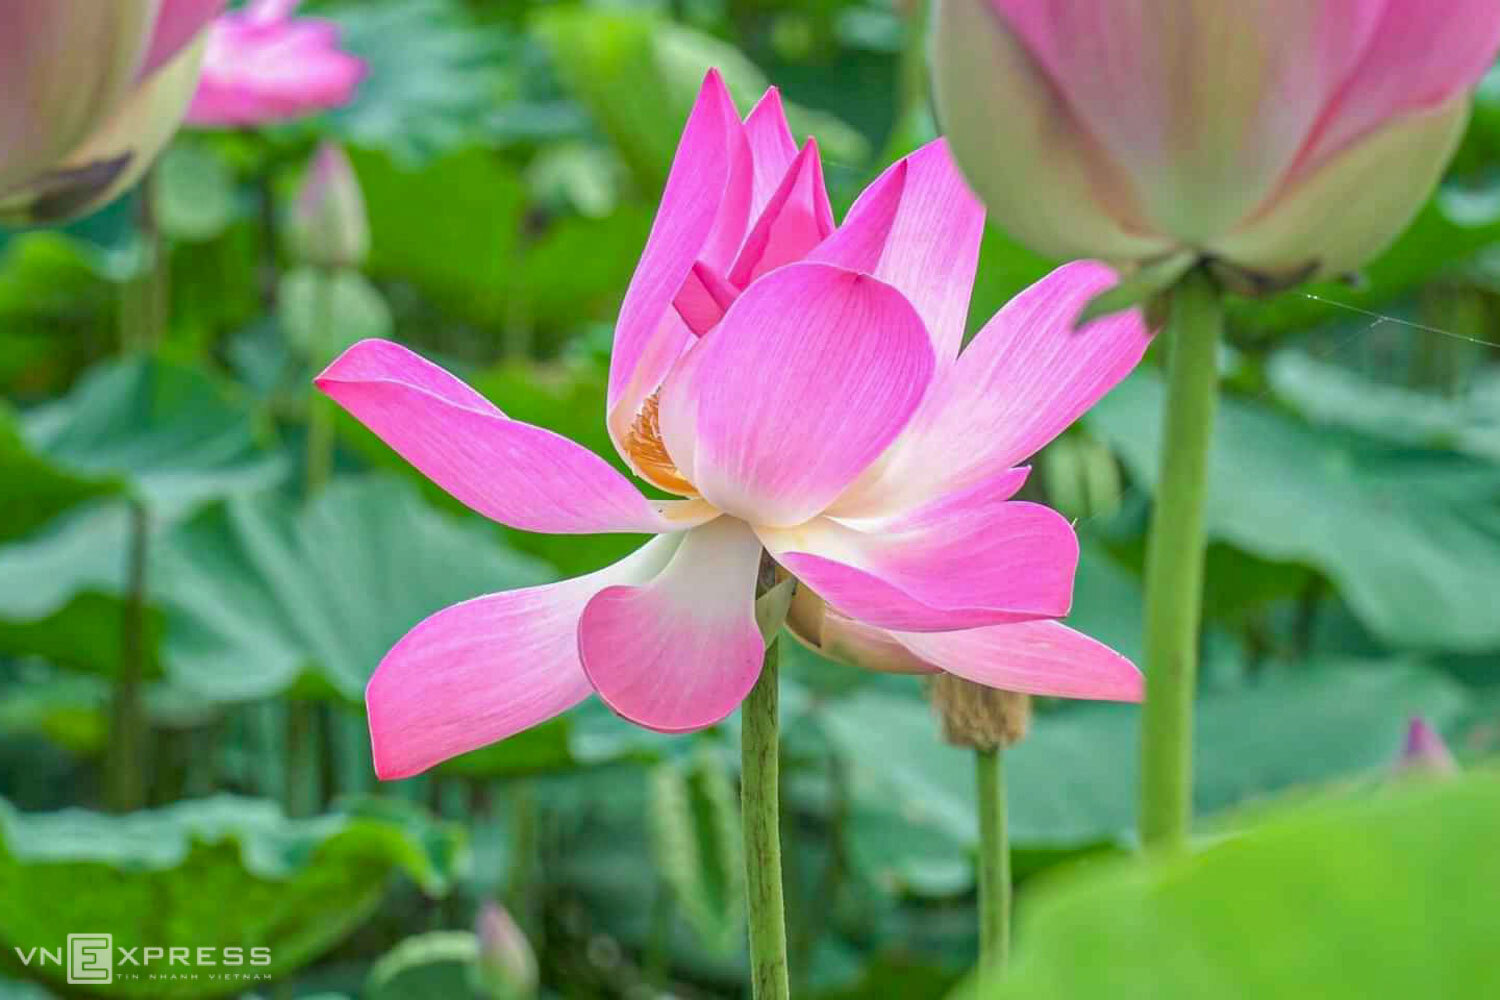 Sen hồng khoe sắc trong nắng sớm. Đầm tại đường tránh Nam Hải Vân trồng loại sen có cánh màu hồng nhạt, không đậm như loại sen tại Điện Bàn.